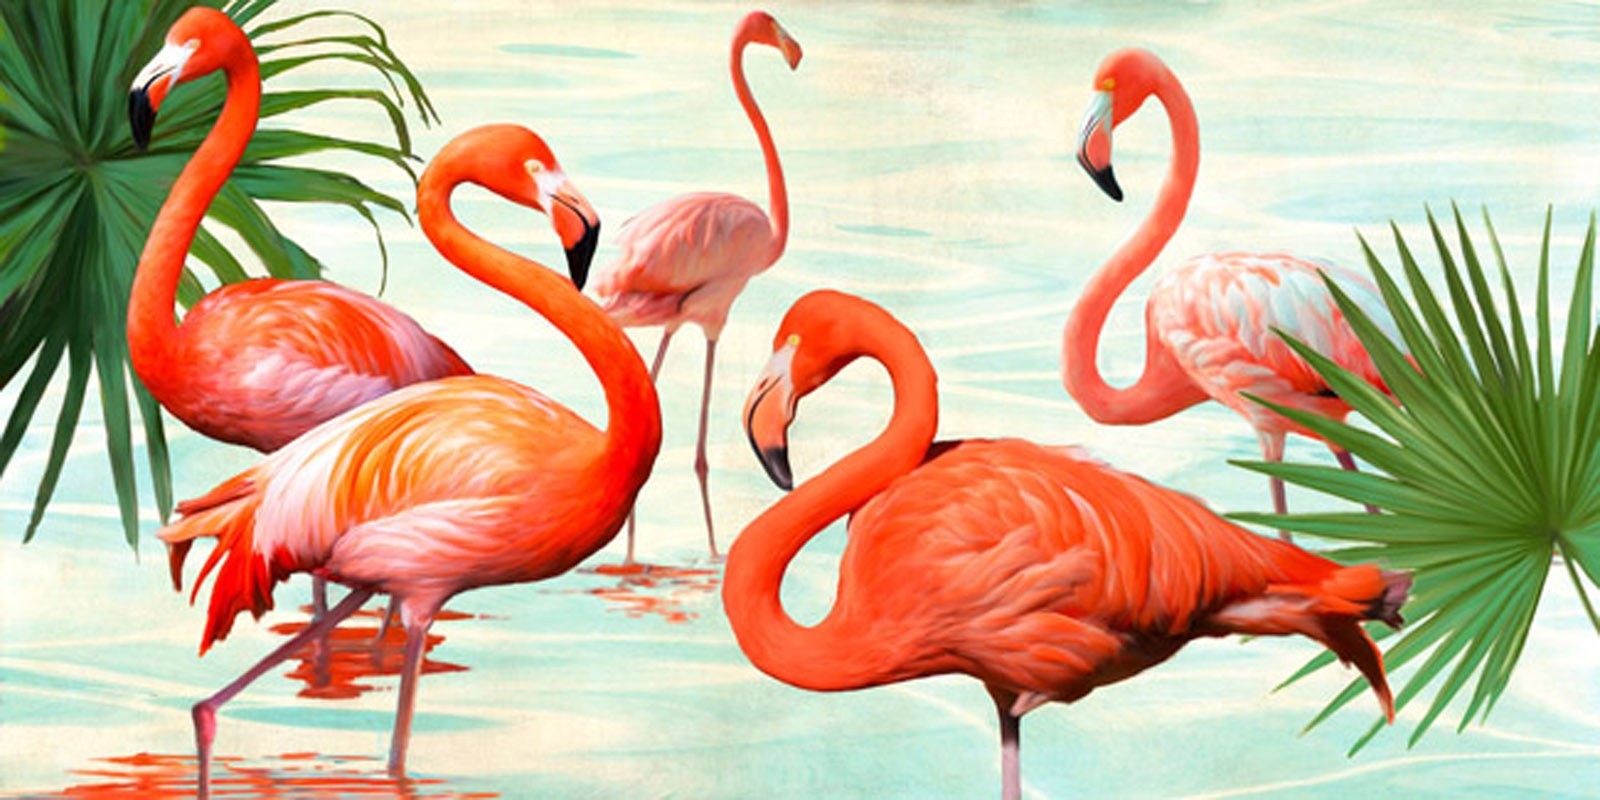 TEO RIZZARDI - Flamingos